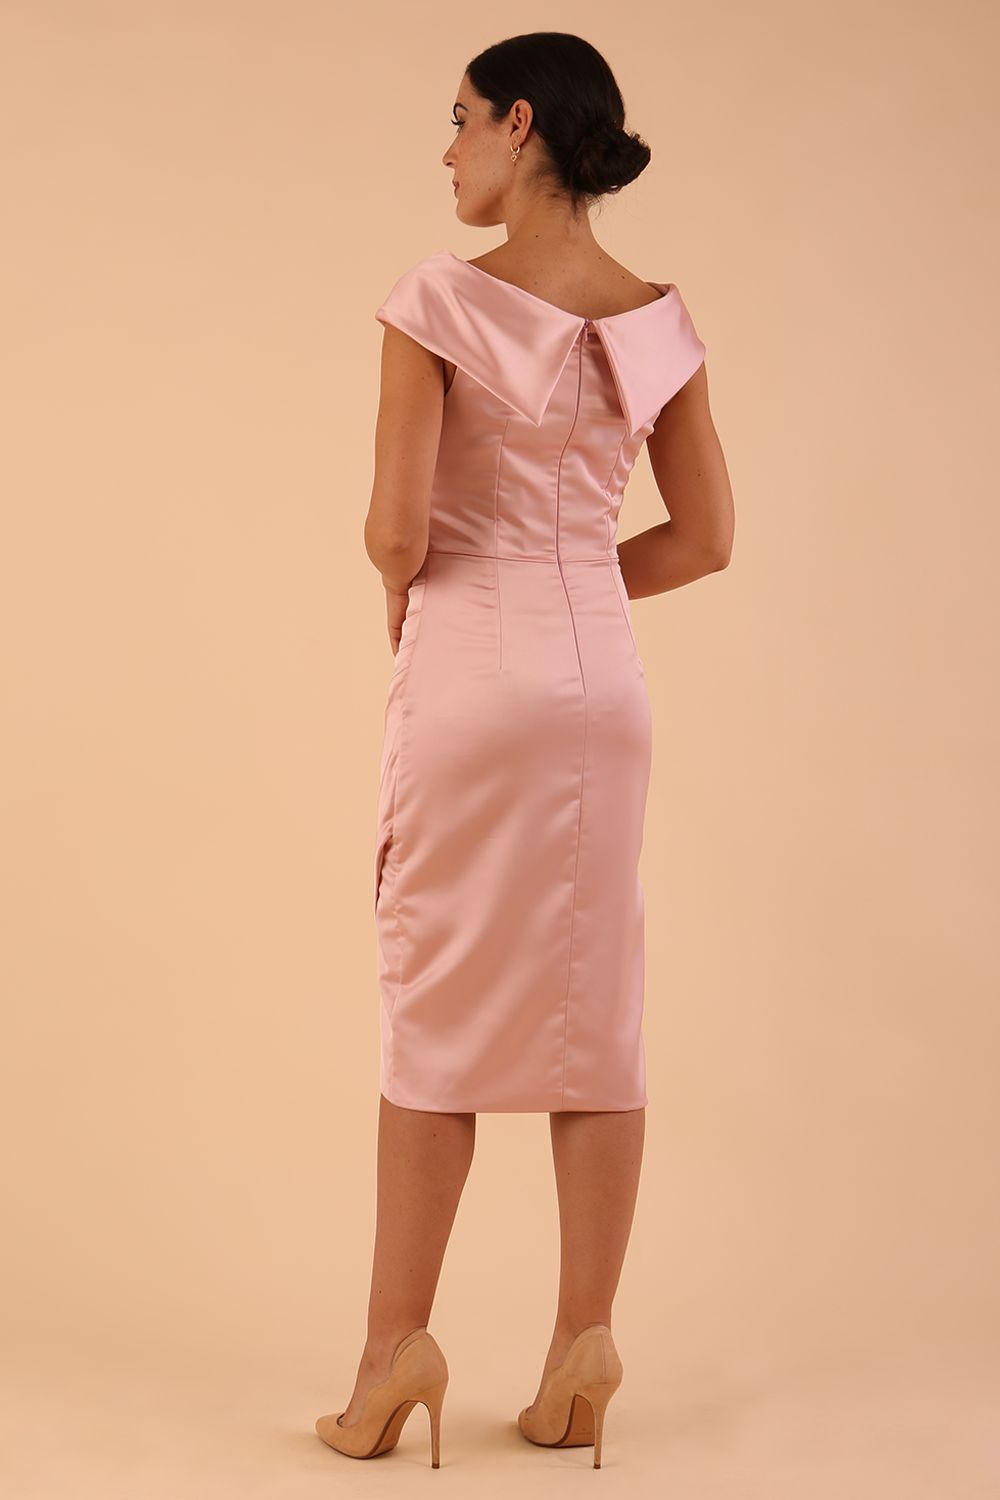 model is wearing diva catwalk casa blanca satin misty pink pencil dress off shoulder design back